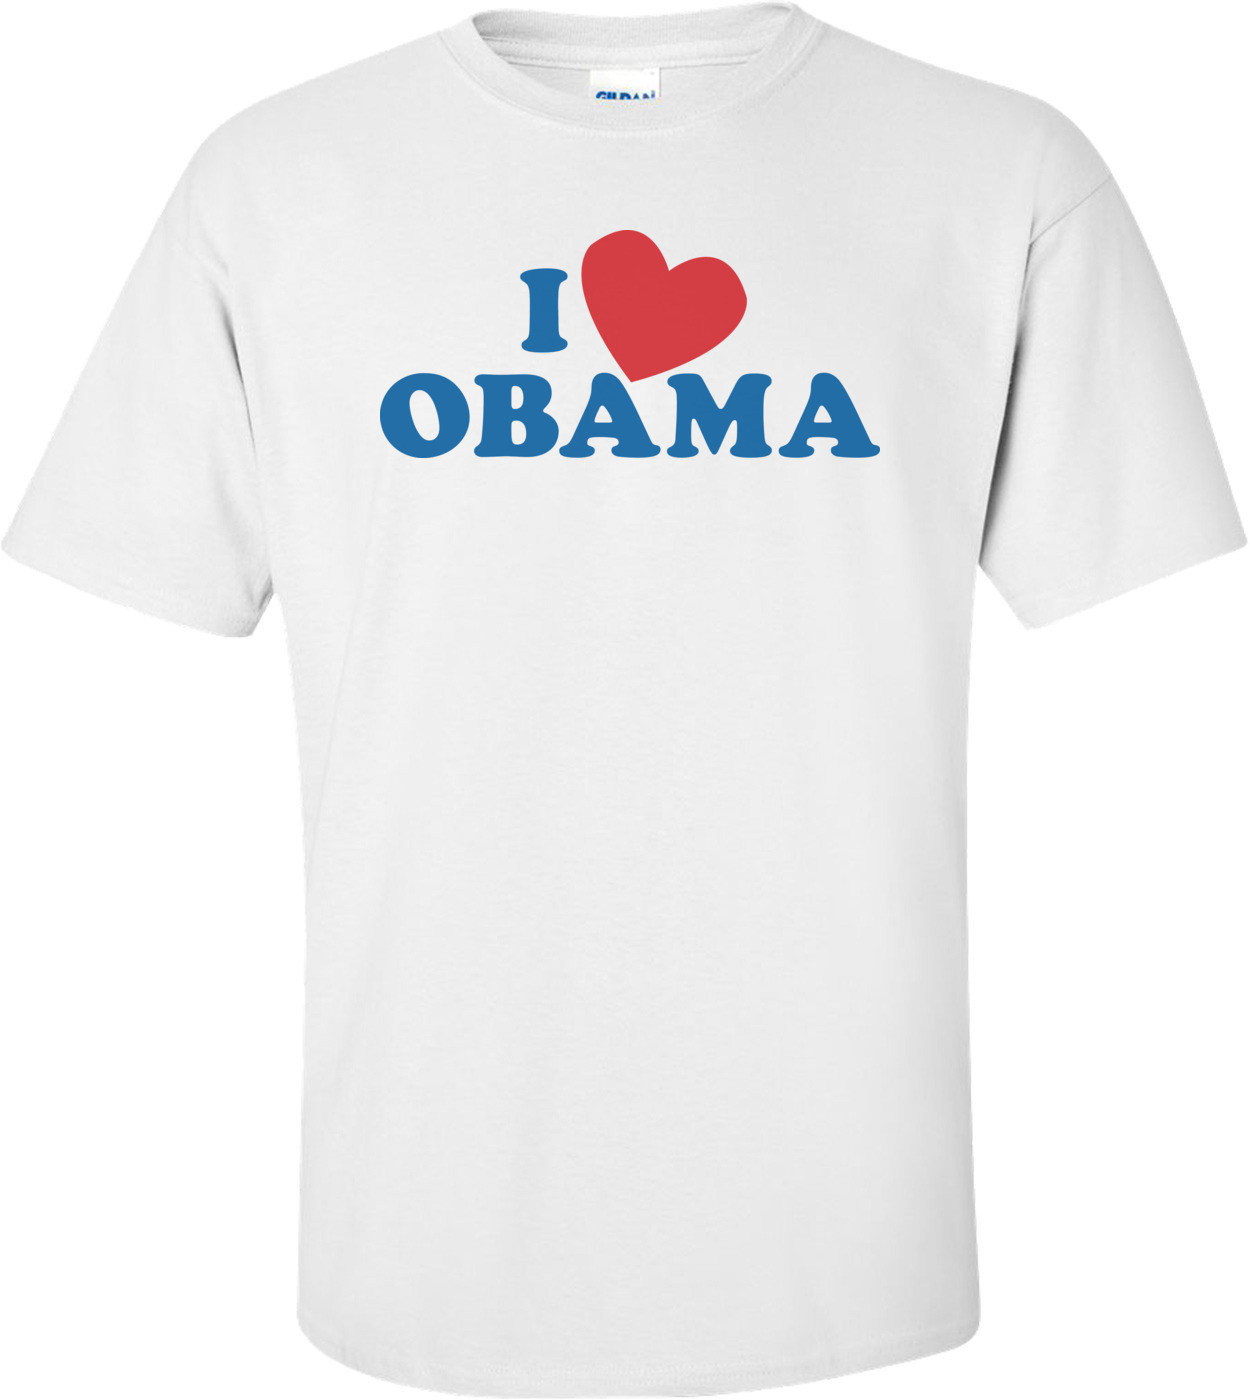 I Love Obama T-shirt